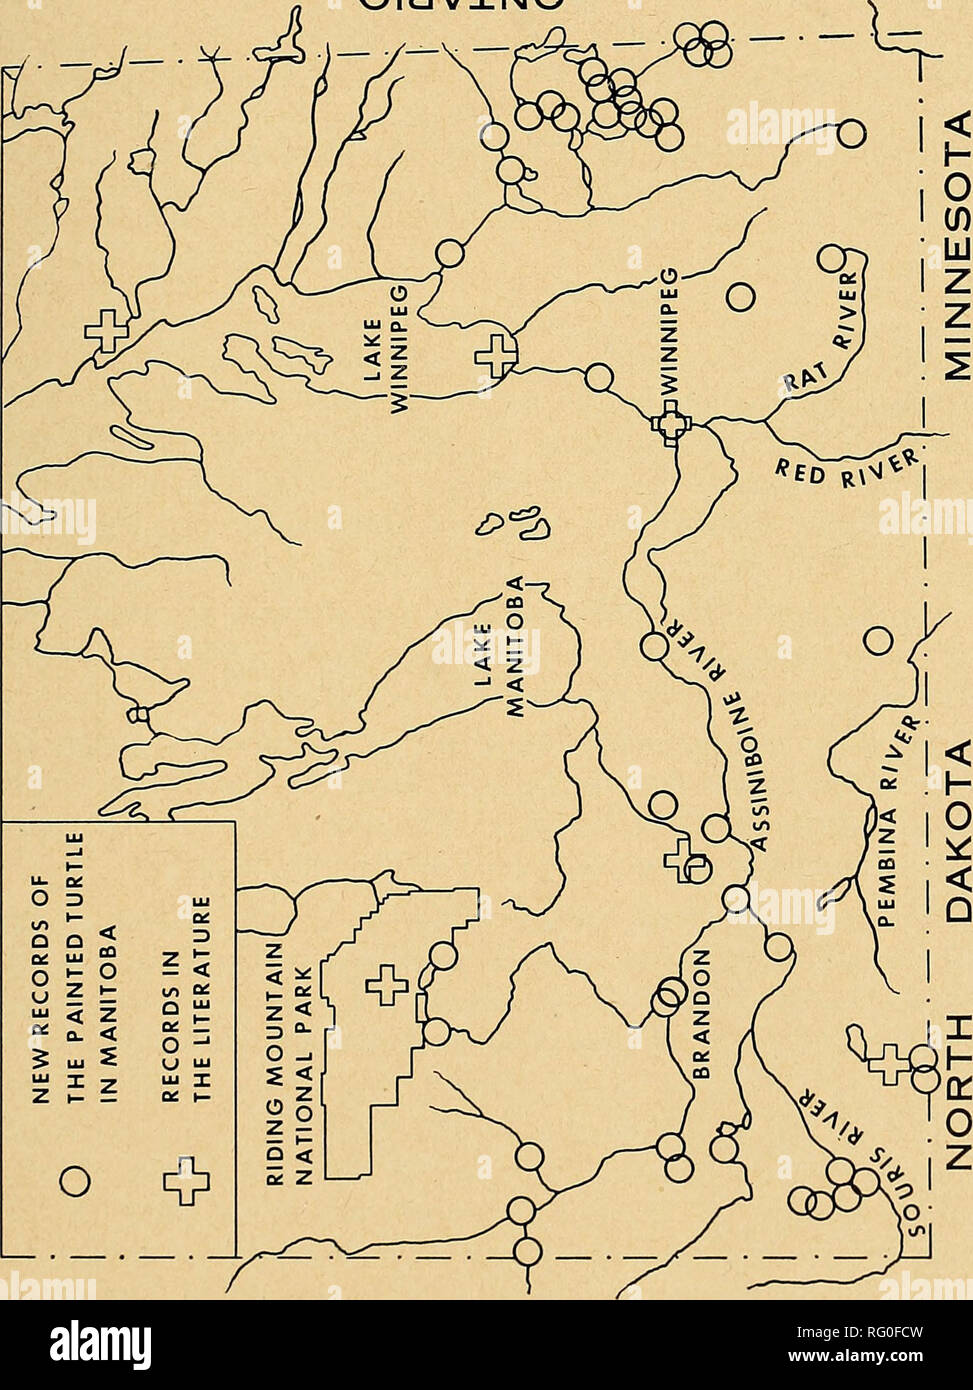 El campo canadiense-naturalista. 1958: Western aves tortuga pintada 29  SouRis sistema fluvial. La cornamenta Creek (J. Serafín a través de G. W.  Malaher, R. Sutton), Cornamenta Creek en la intersección con